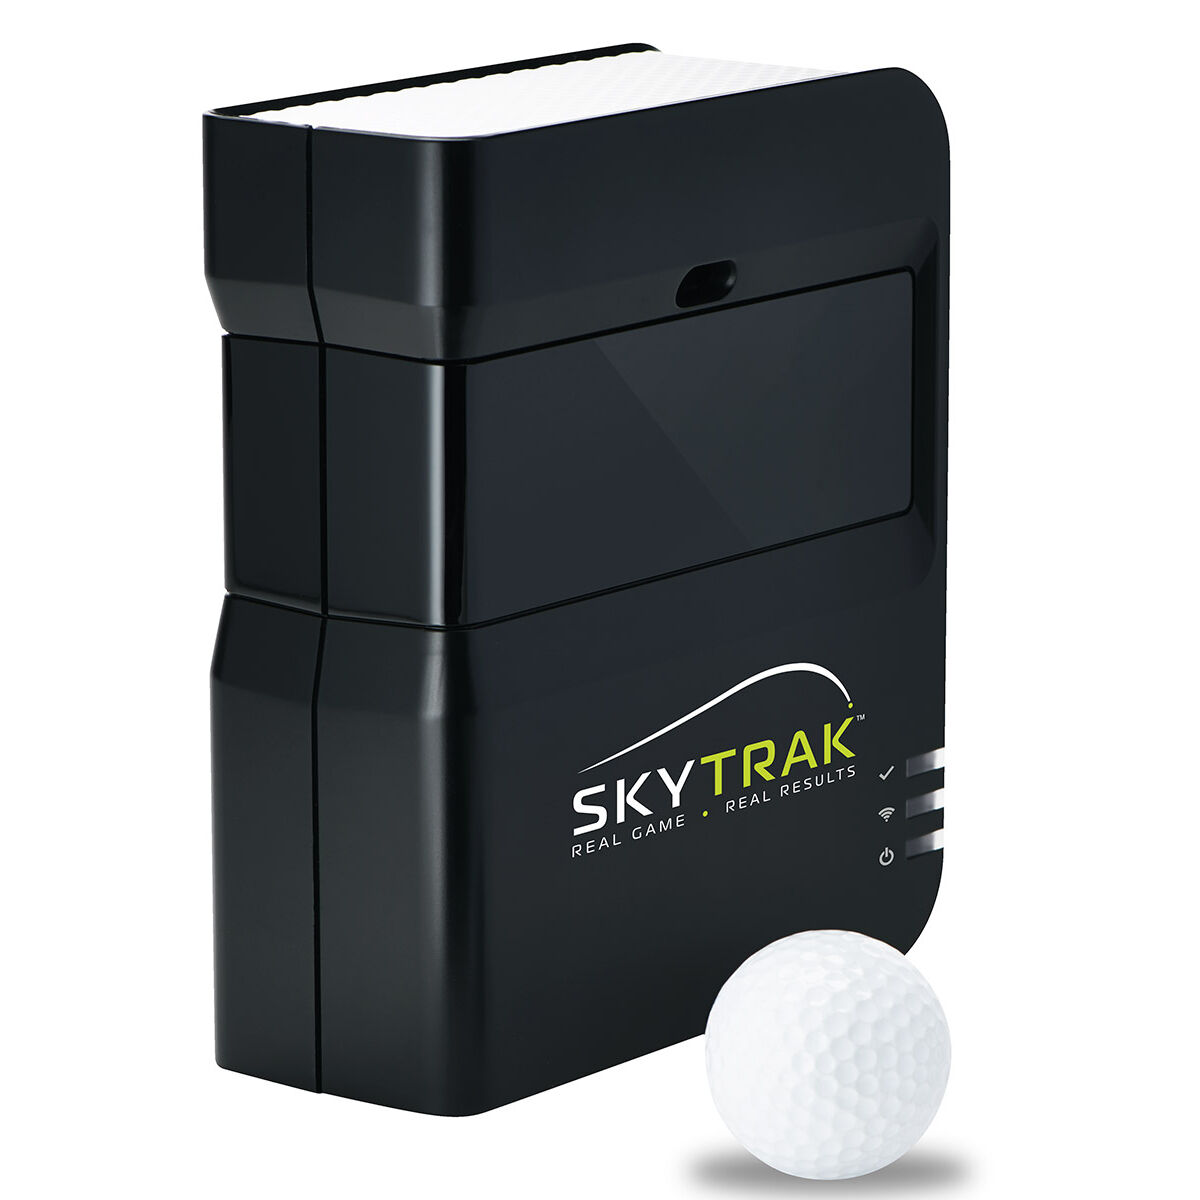 SkyCaddie Black SkyTrak Personal Launch Monitor & Simulator, One Size | American Golf